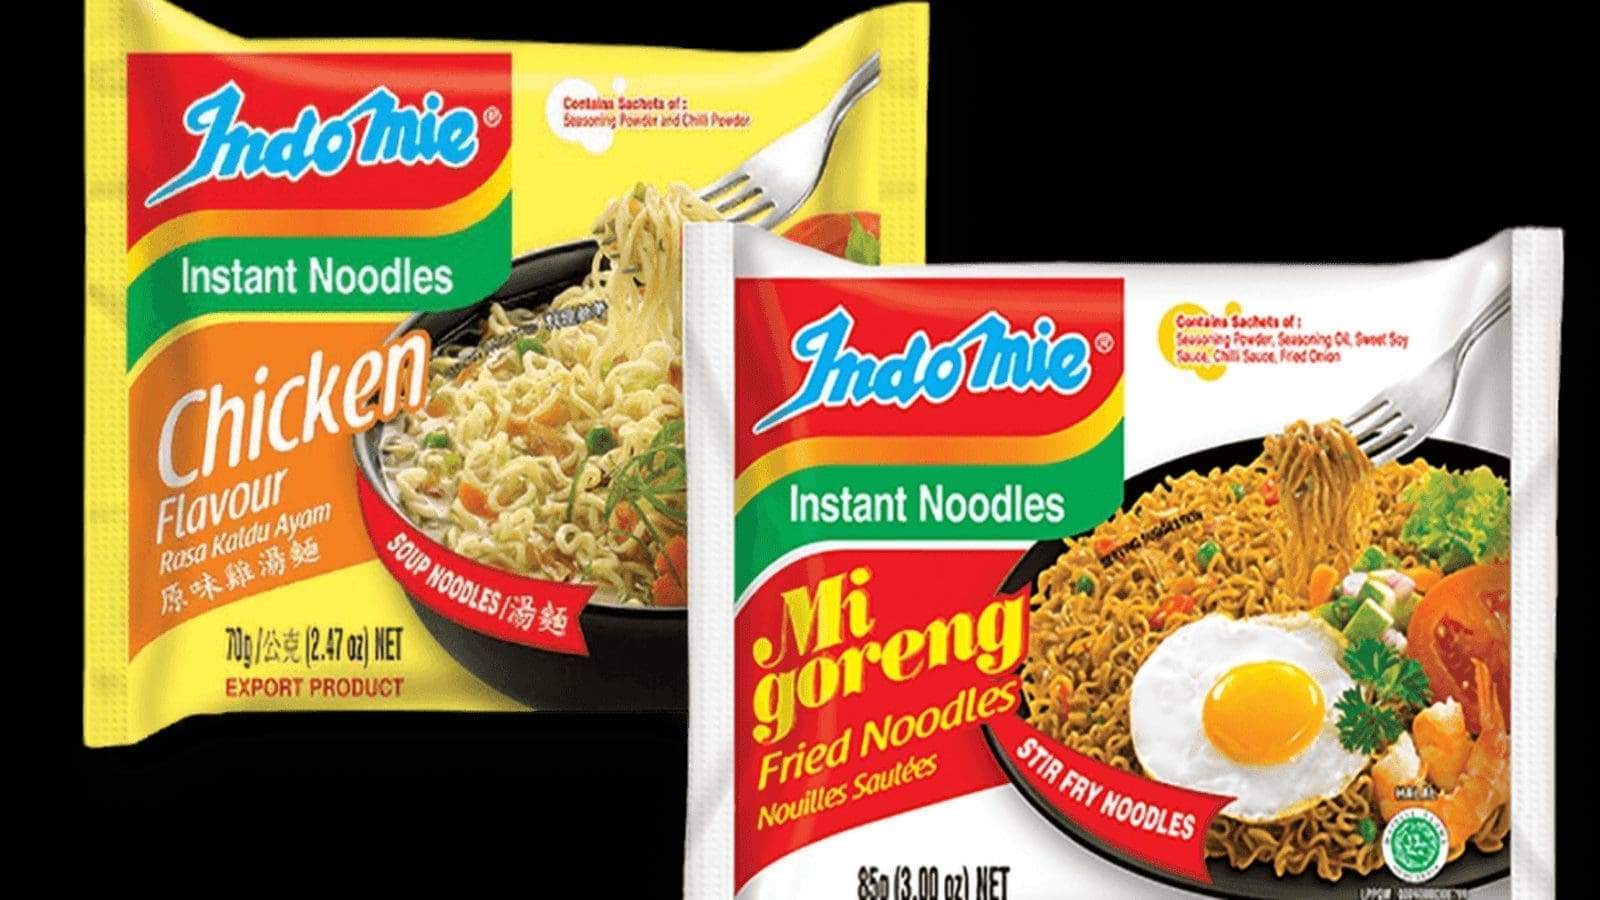 Nigerian regulatory watchdog investigates Indomie noodles over cancer-linked concerns